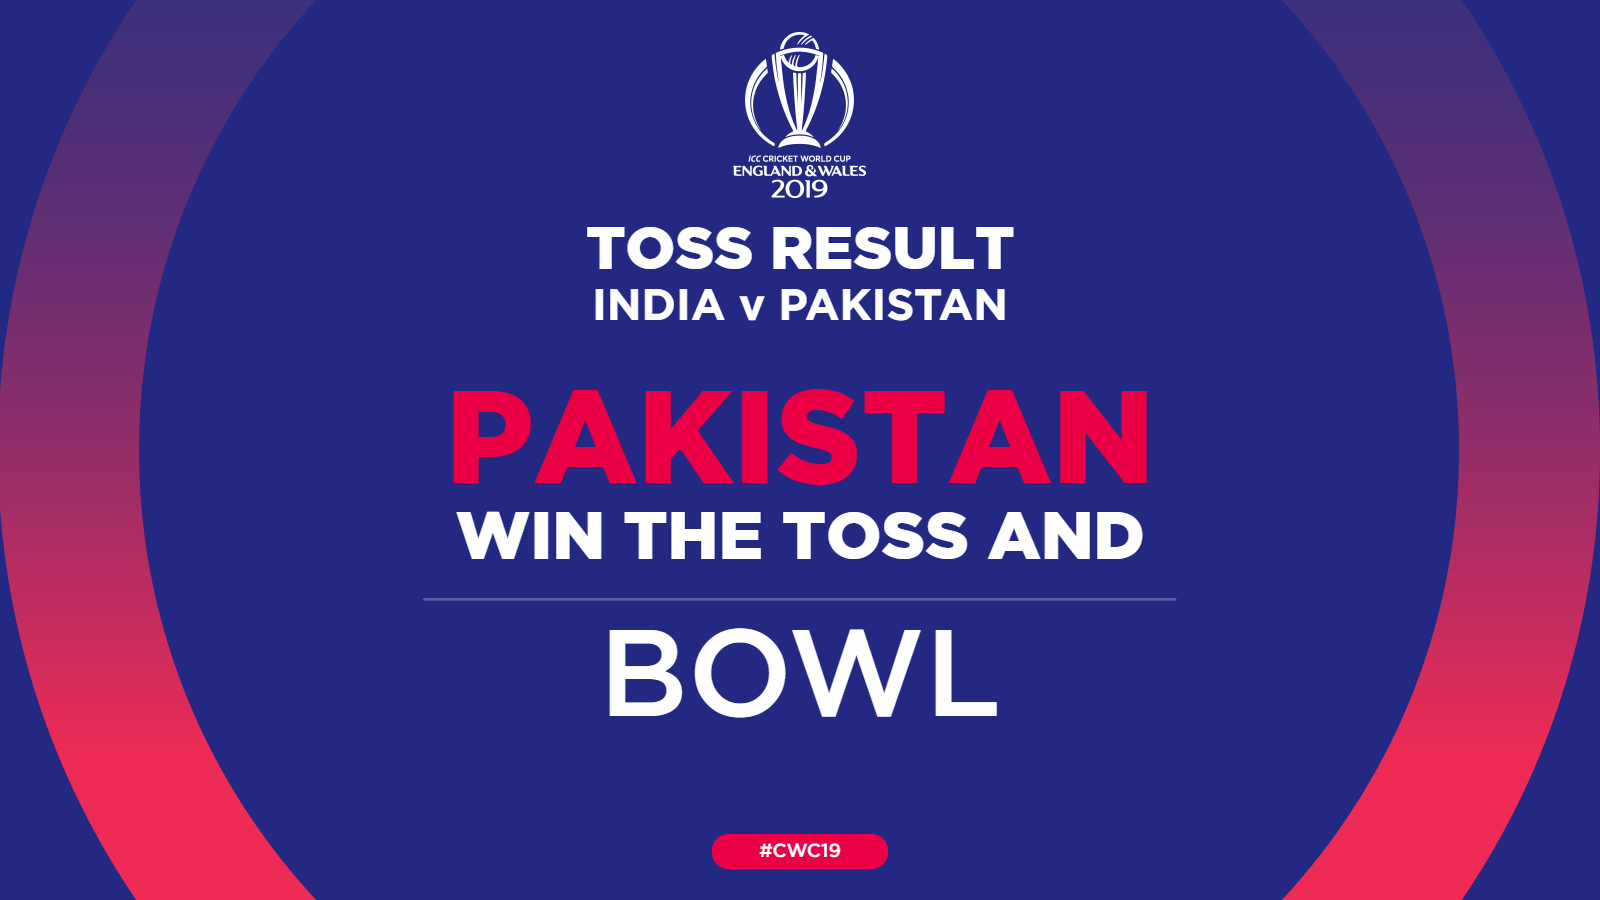 पाकिस्तानले टस जितेर बलिङ गर्दै, भारतको लागि धवनको स्थानमा विजय शंकर खेल्ने